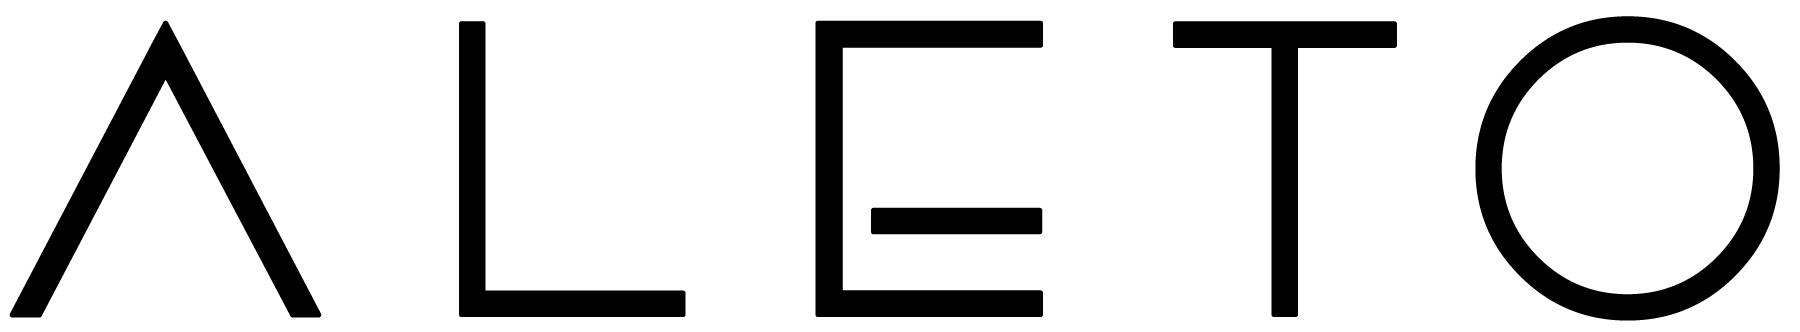 Aleto Minimal Logo